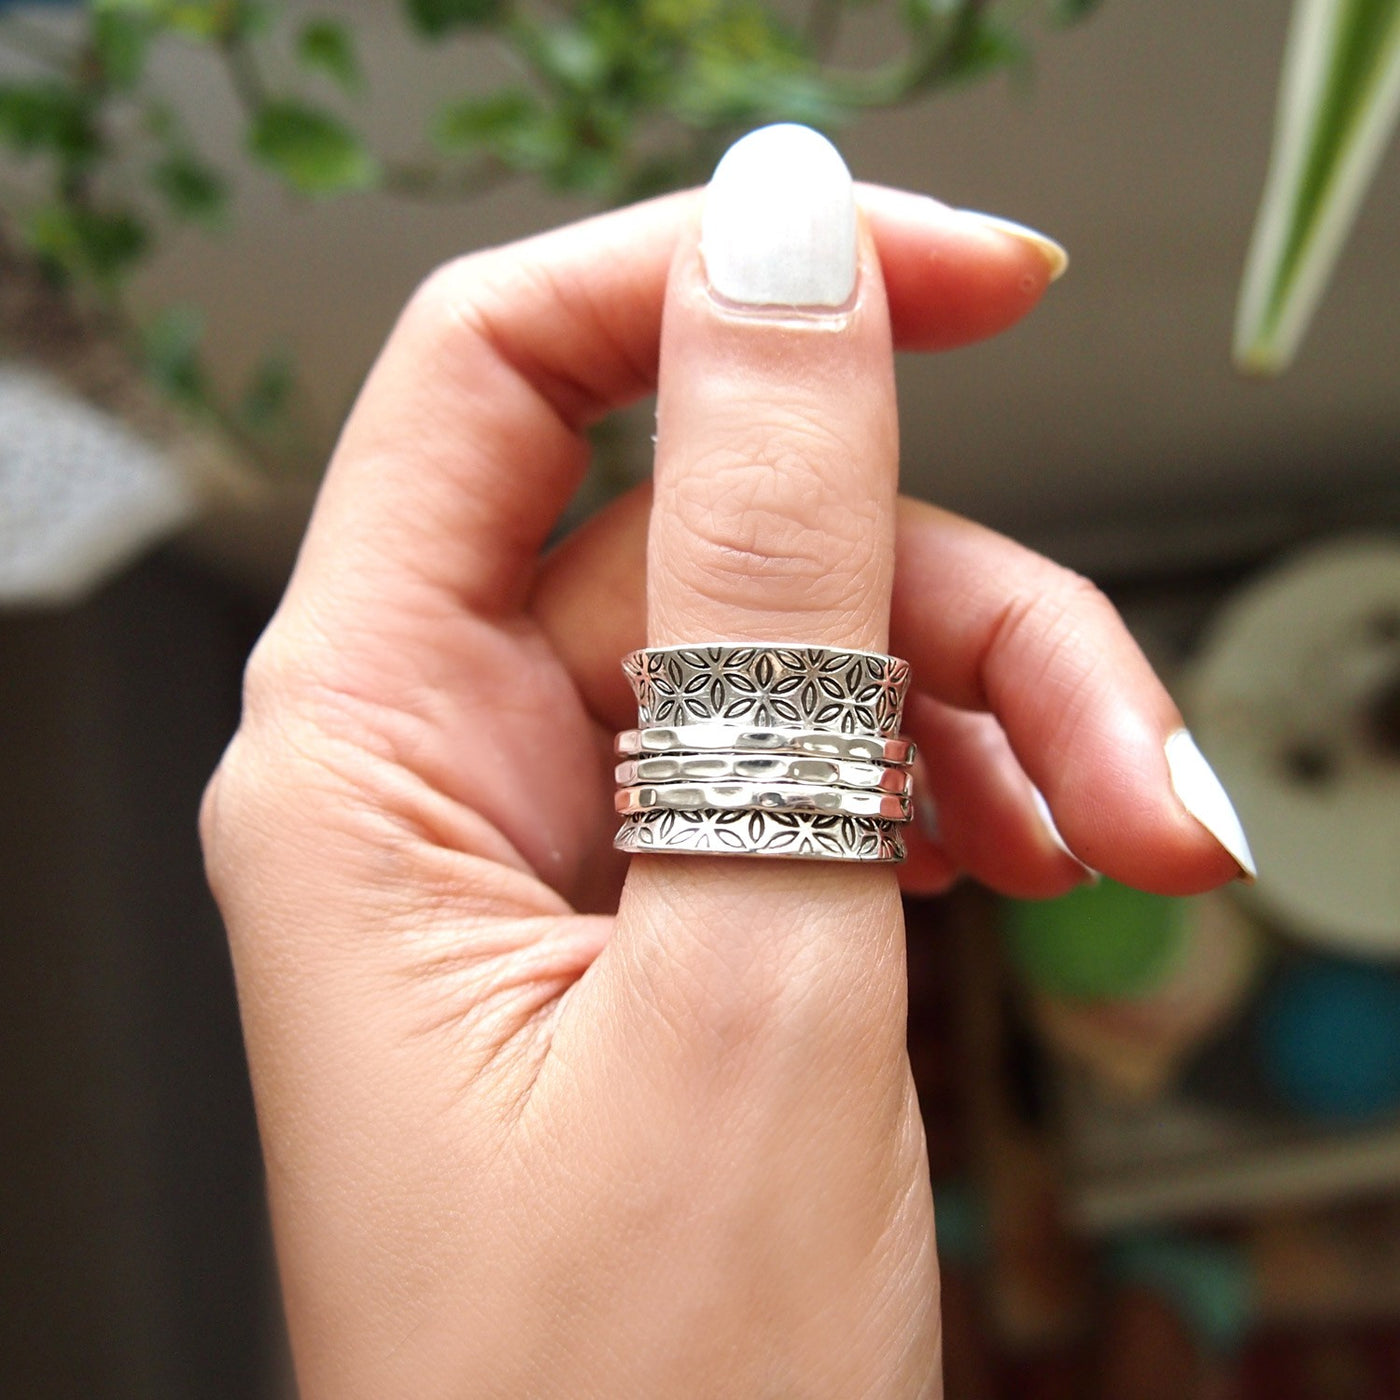 Sterling Silver Flower of Life Spinner Ring